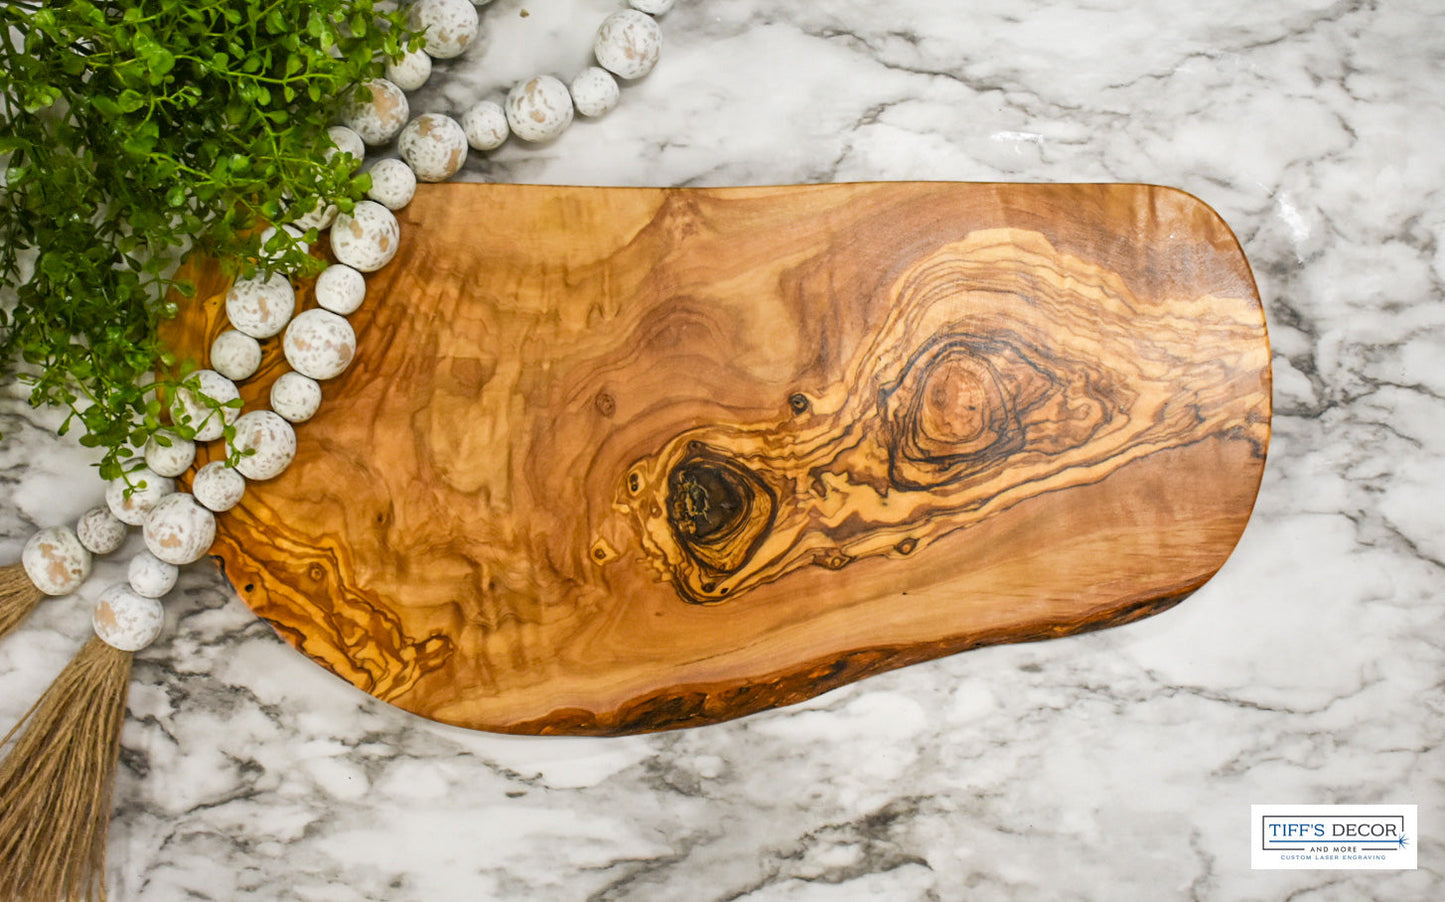 Olive wood 14.5 x9 inch cutting board